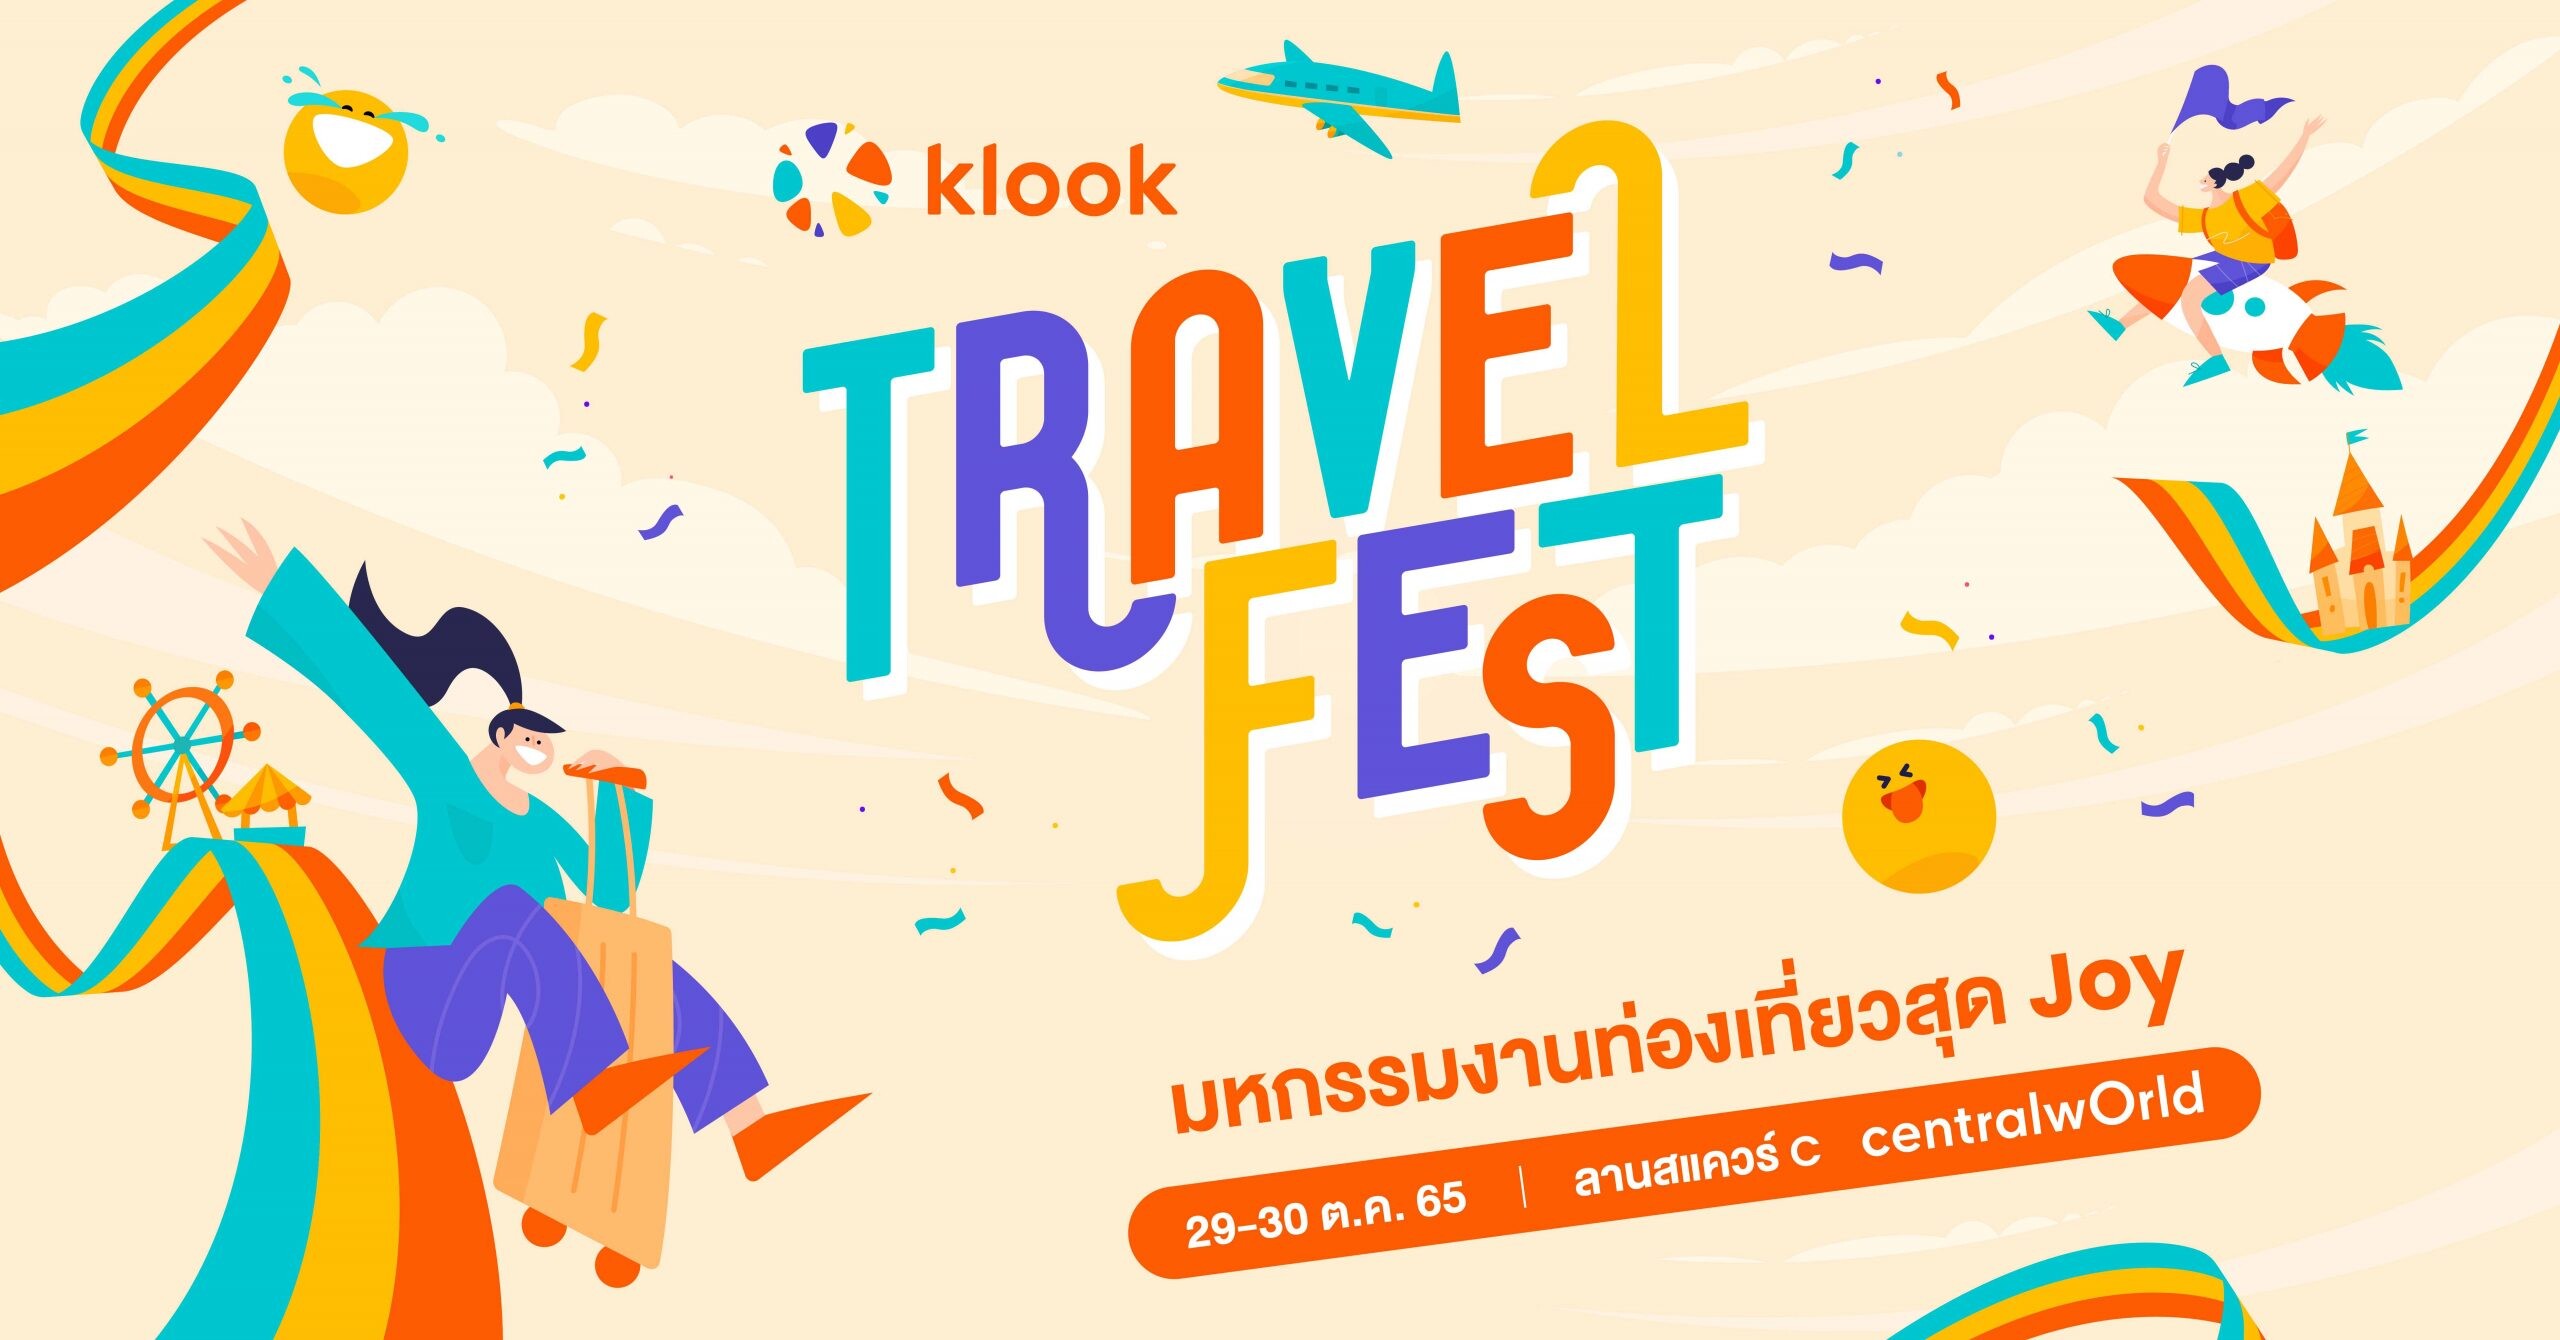 เตรียมตัวให้พร้อม! พบกับงานมหกรรมท่องเที่ยวสุดยิ่งใหญ่ Klook (คลูก) Travel Fest